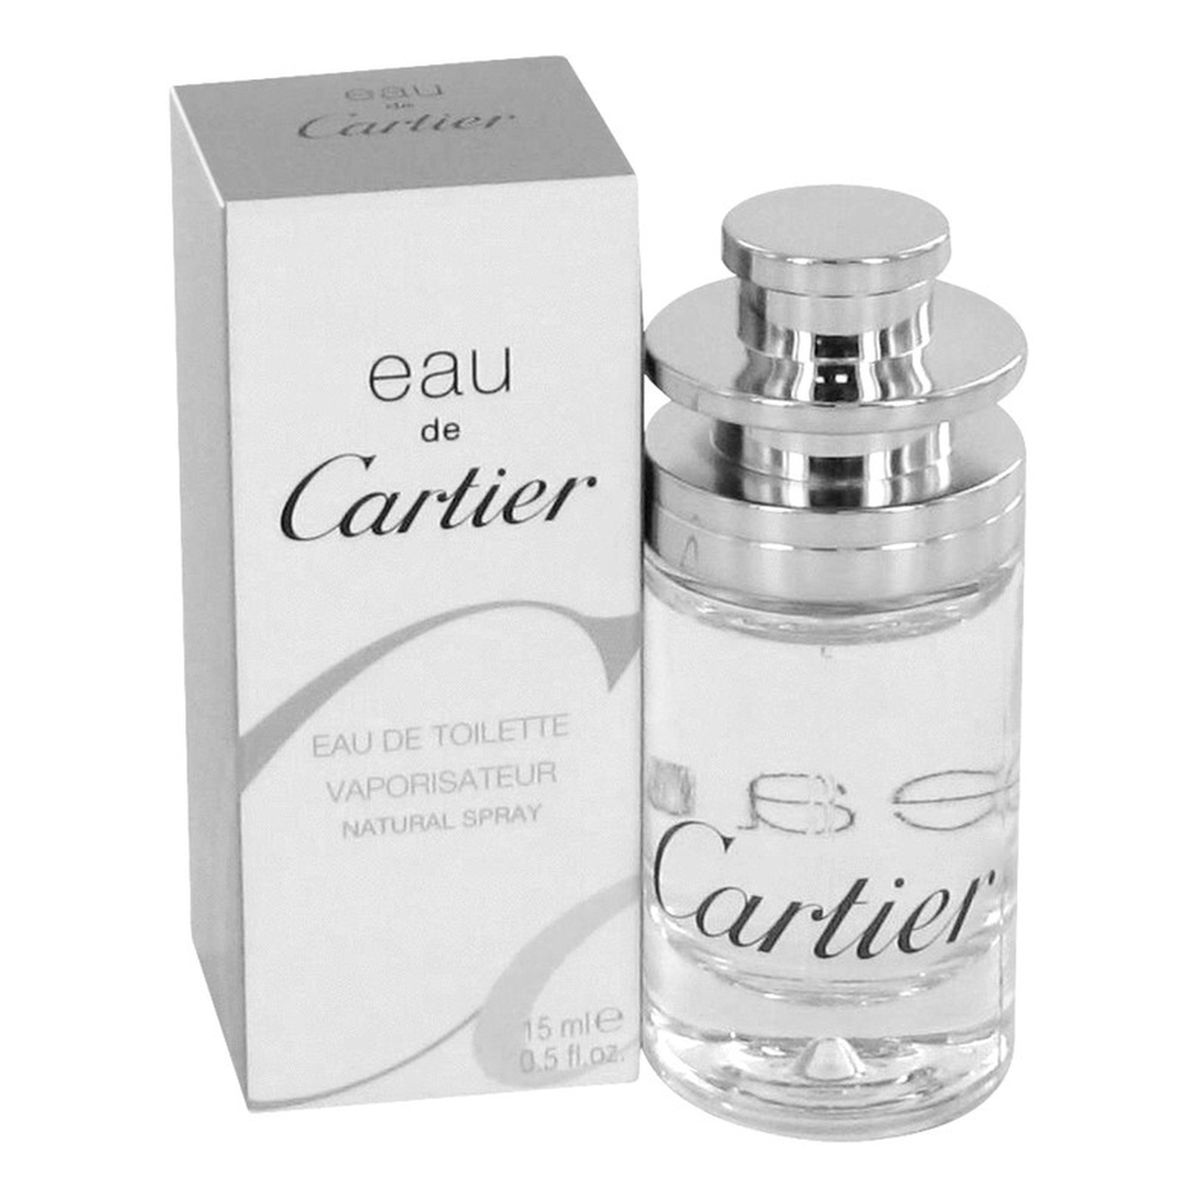 Cartier Eau de Cartier woda toaletowa 15ml